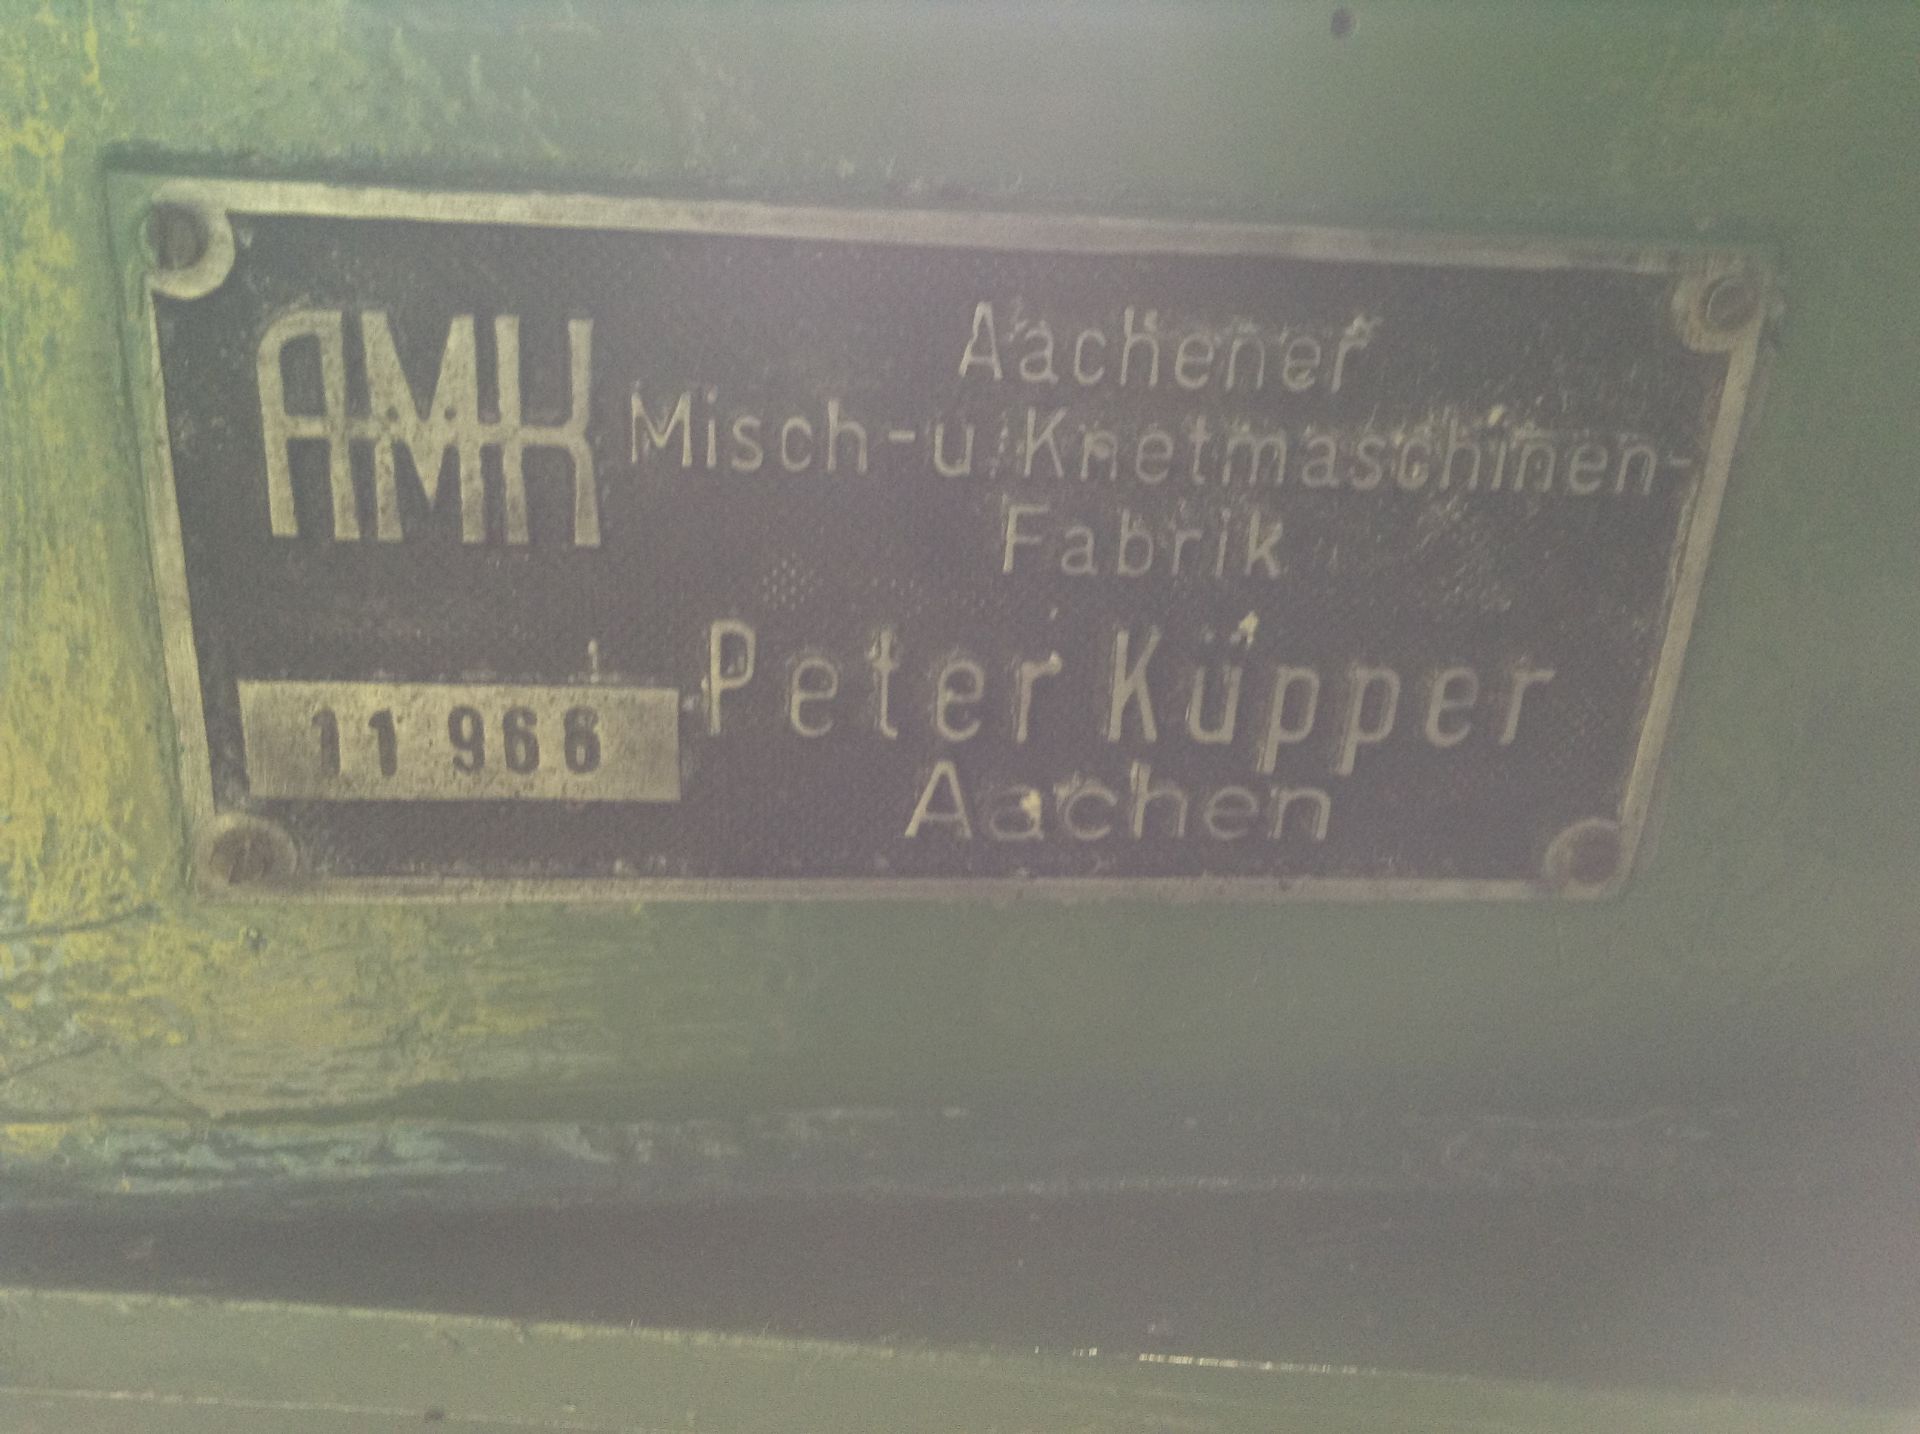 AMK / Ross kneader extruder / mixer, Class IV Model KE-40, Serial # 46560. AMK Machine KNE-0160L, - Image 9 of 23